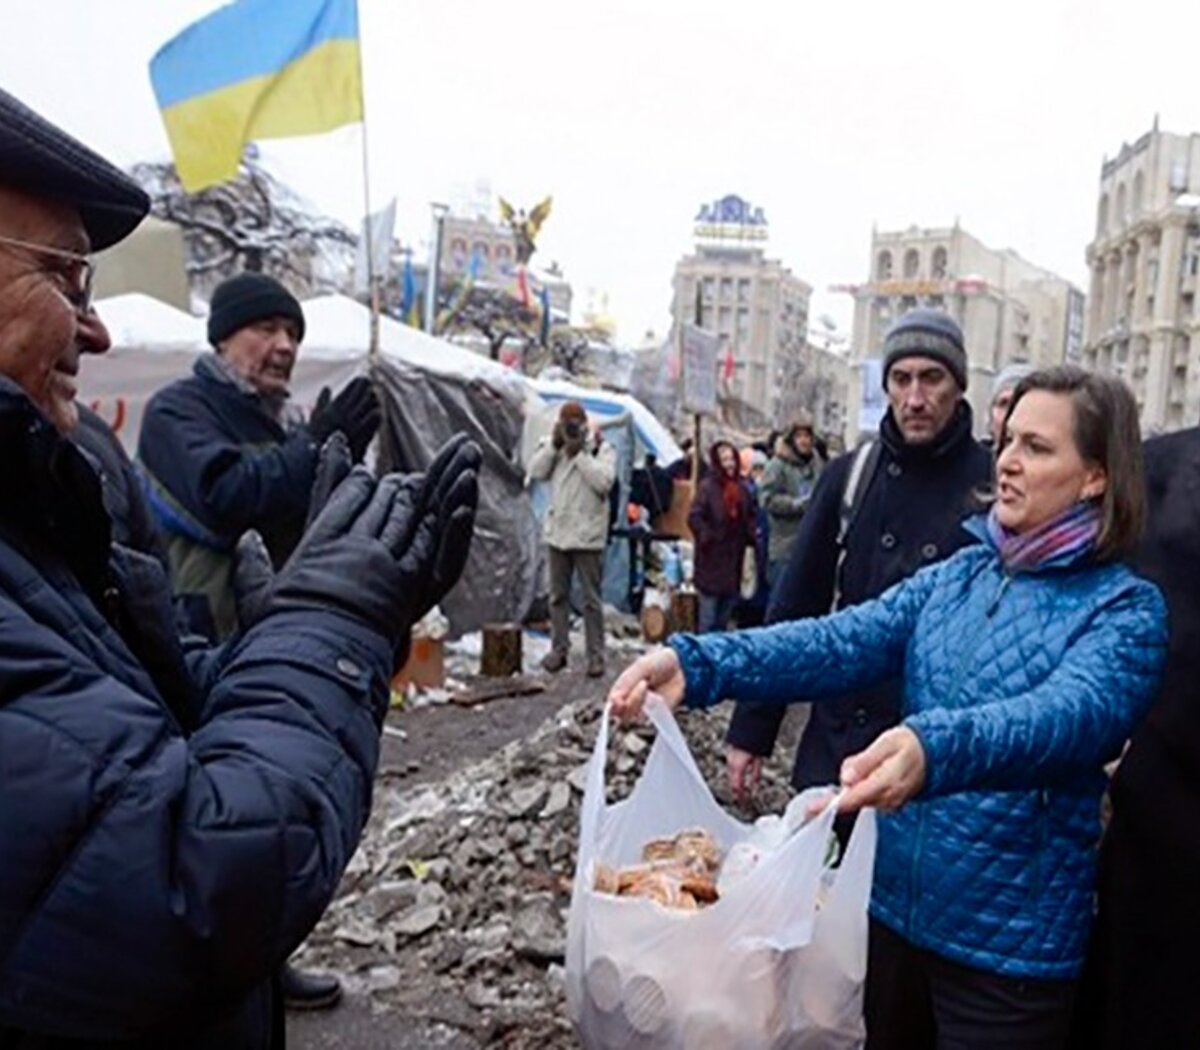 Victoria Nuland, un personaje sombrío en la crisis de Ucrania | Opinión | Página12